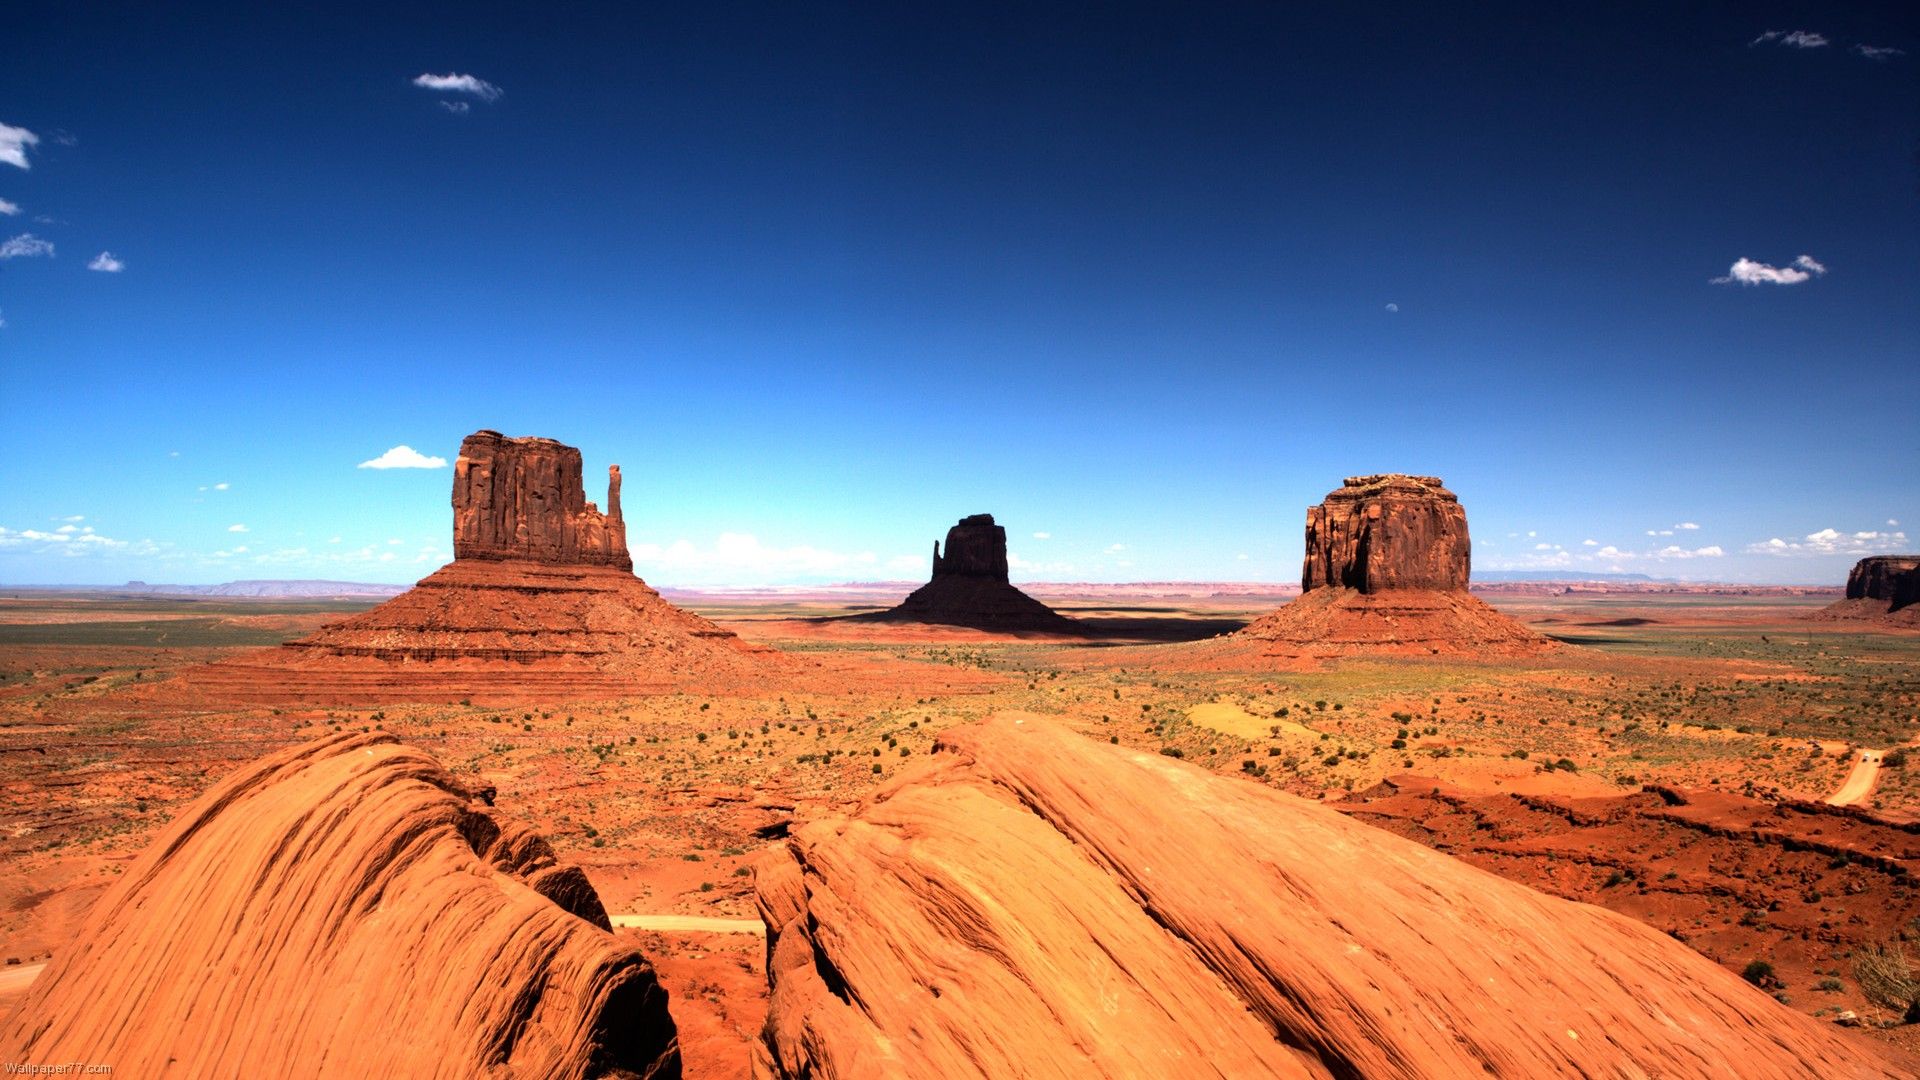 Desert HD Wallpapers   Top Free Desert HD Backgrounds